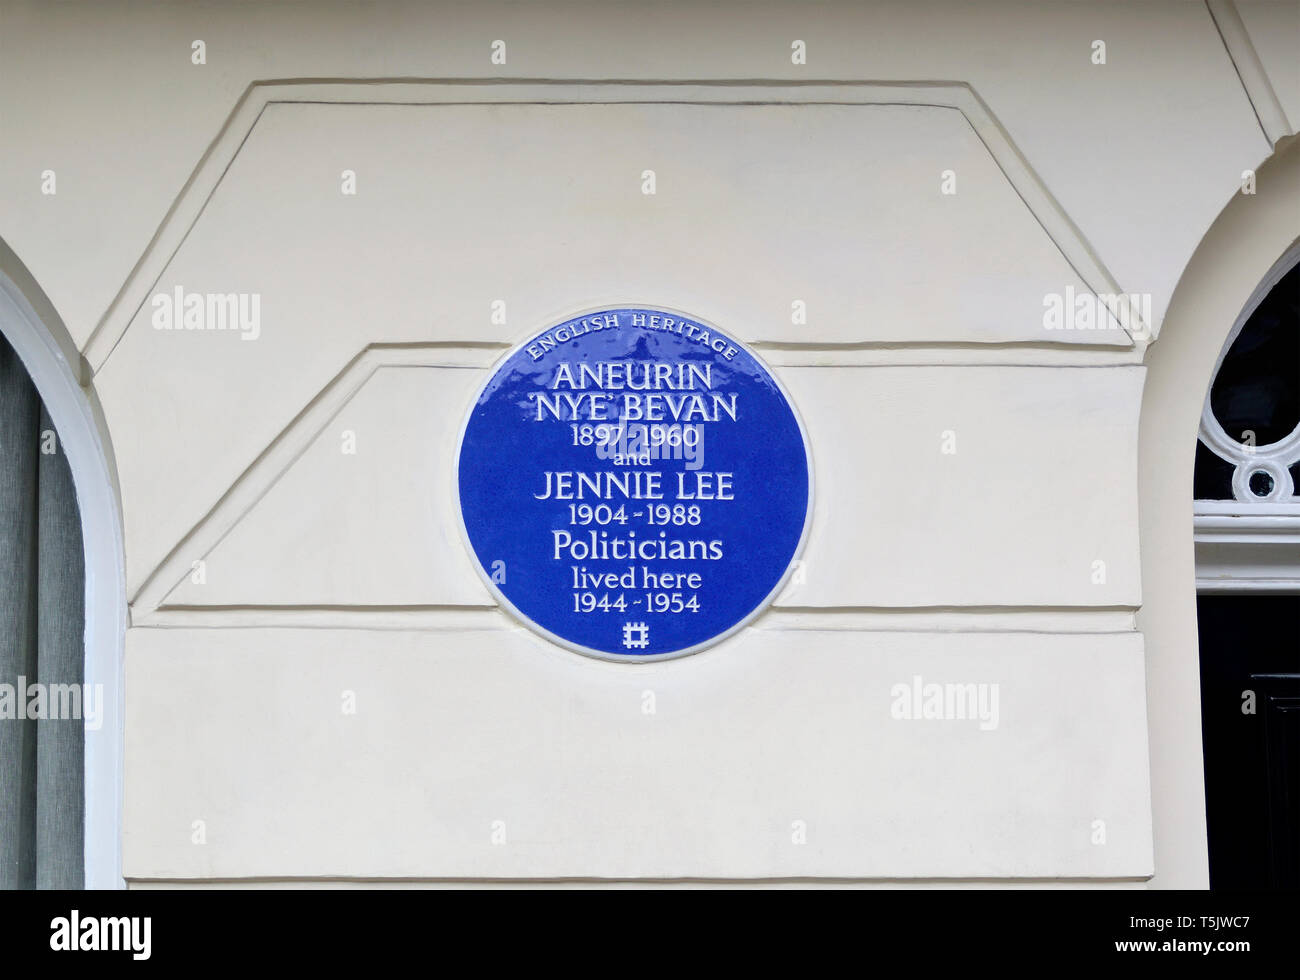 Londra, Inghilterra, Regno Unito. Blu Commemorative Plaque: Aneurin 'Nye" Bevan e Jennie Lee (rispettivamente fondatori del NHS e la Open University) vissuto .... Foto Stock